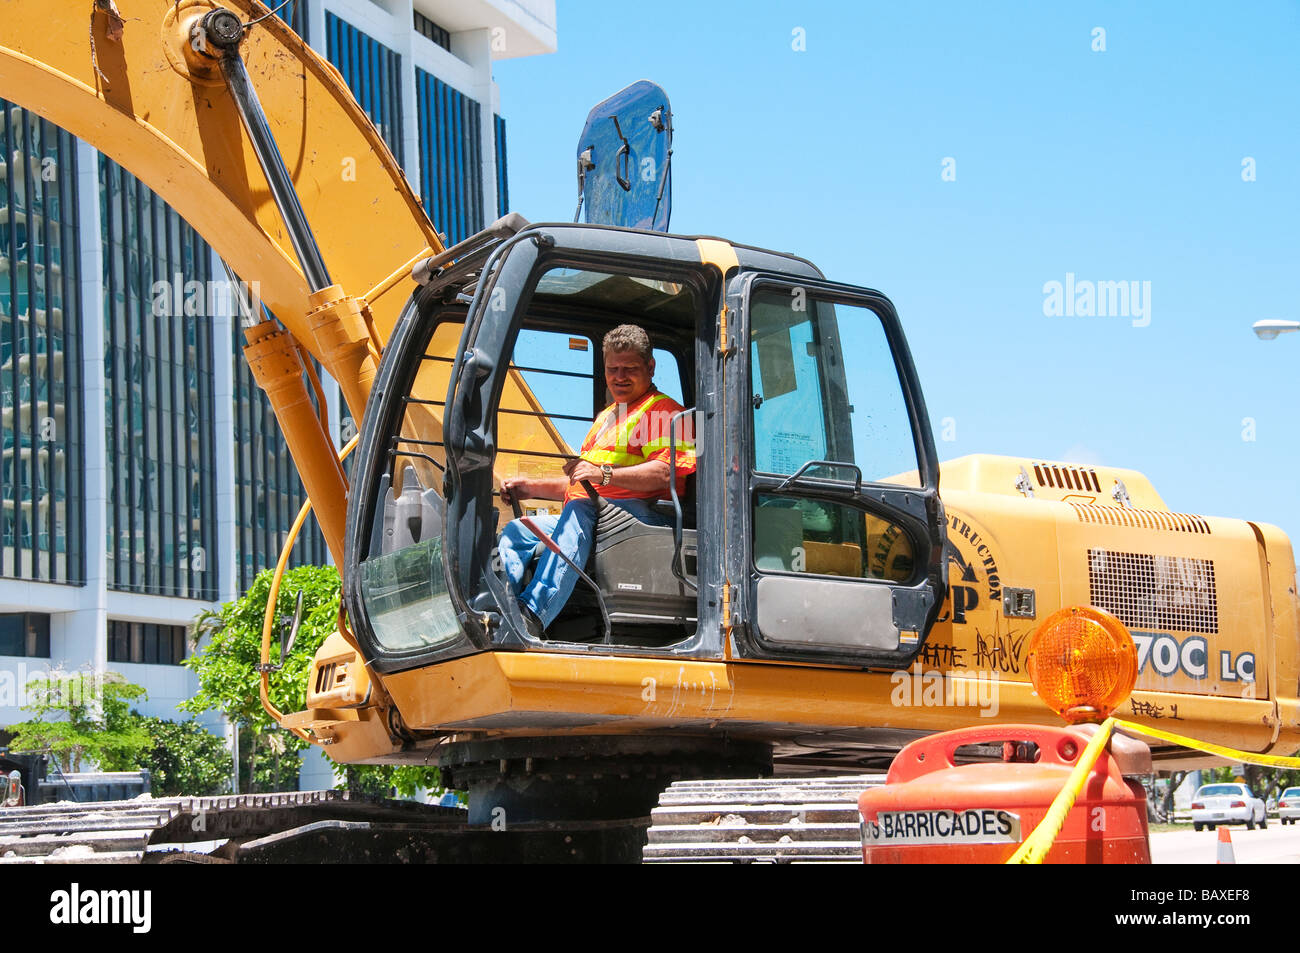 Man in excavator cab Stock Photo